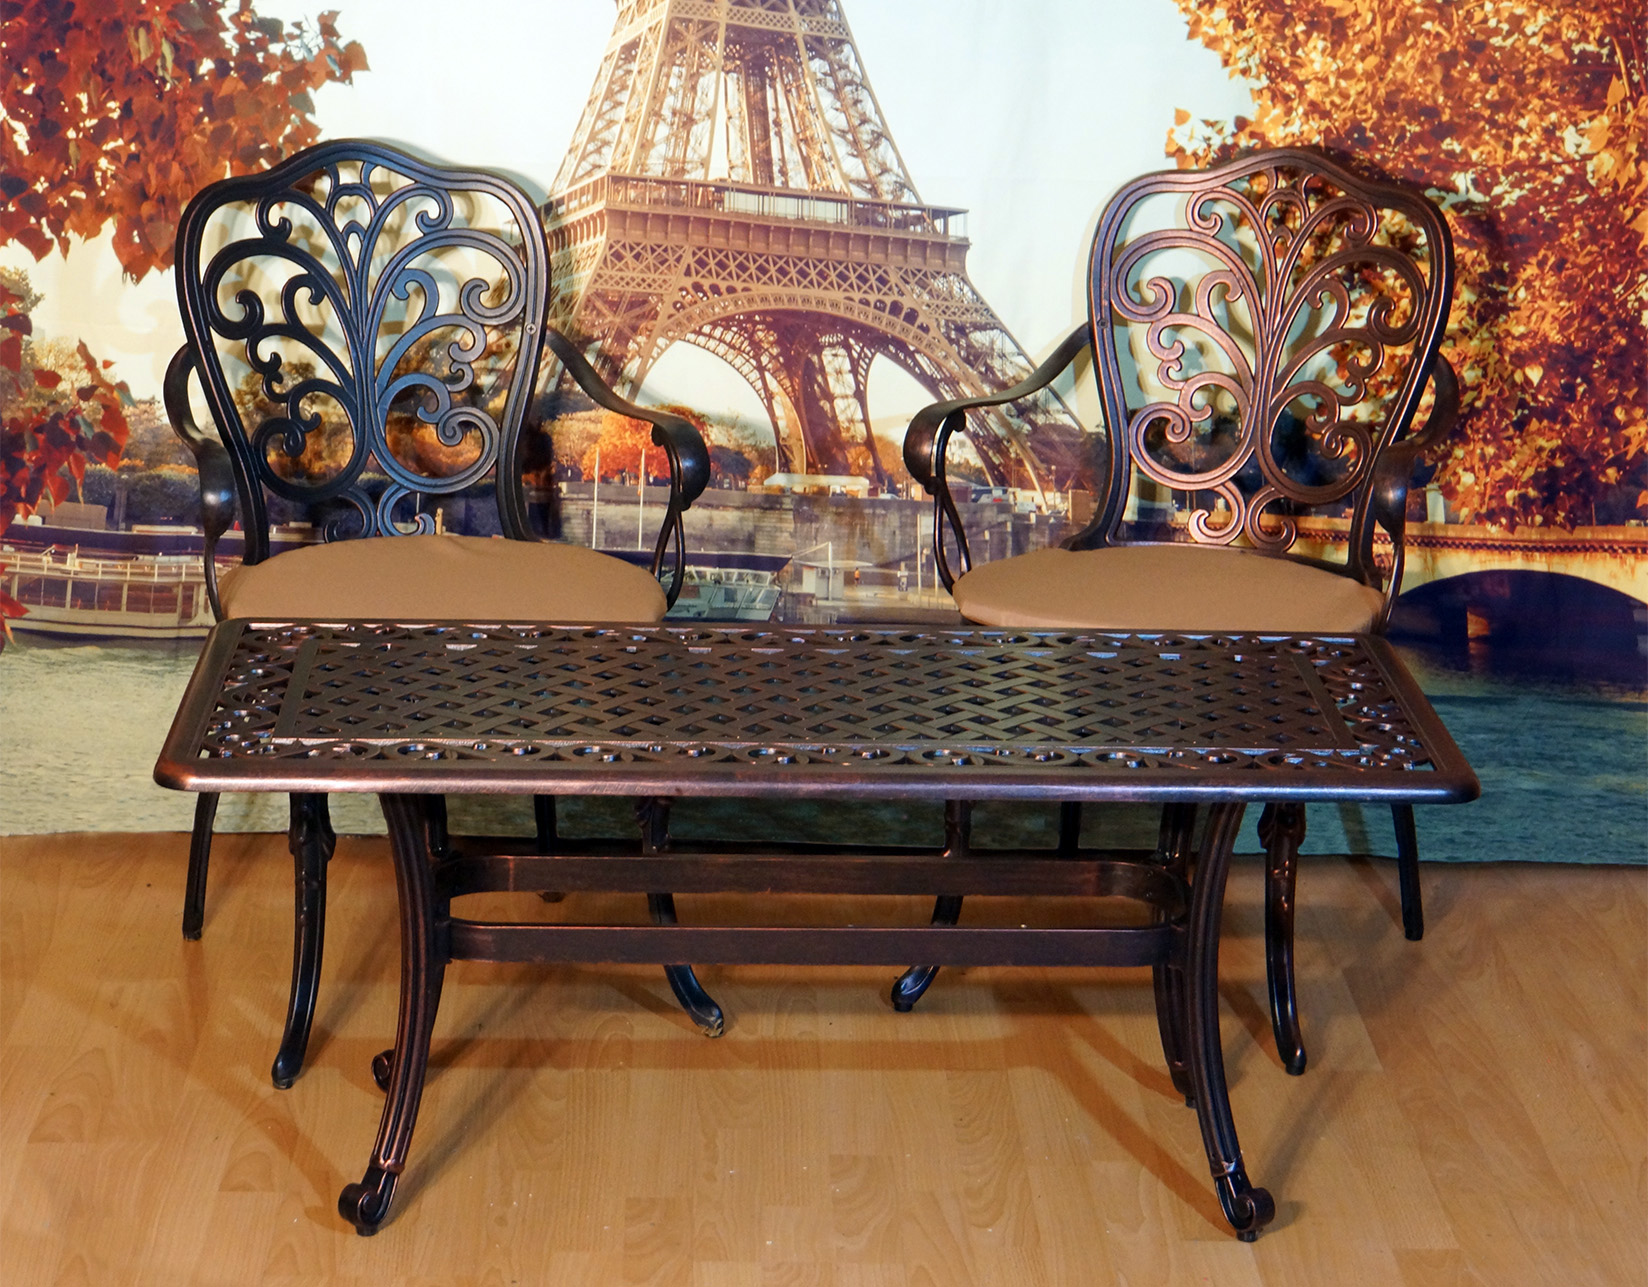 Мебель для улицы, садовые кресла и столик из металла, кофейный комплект мебели на балкон